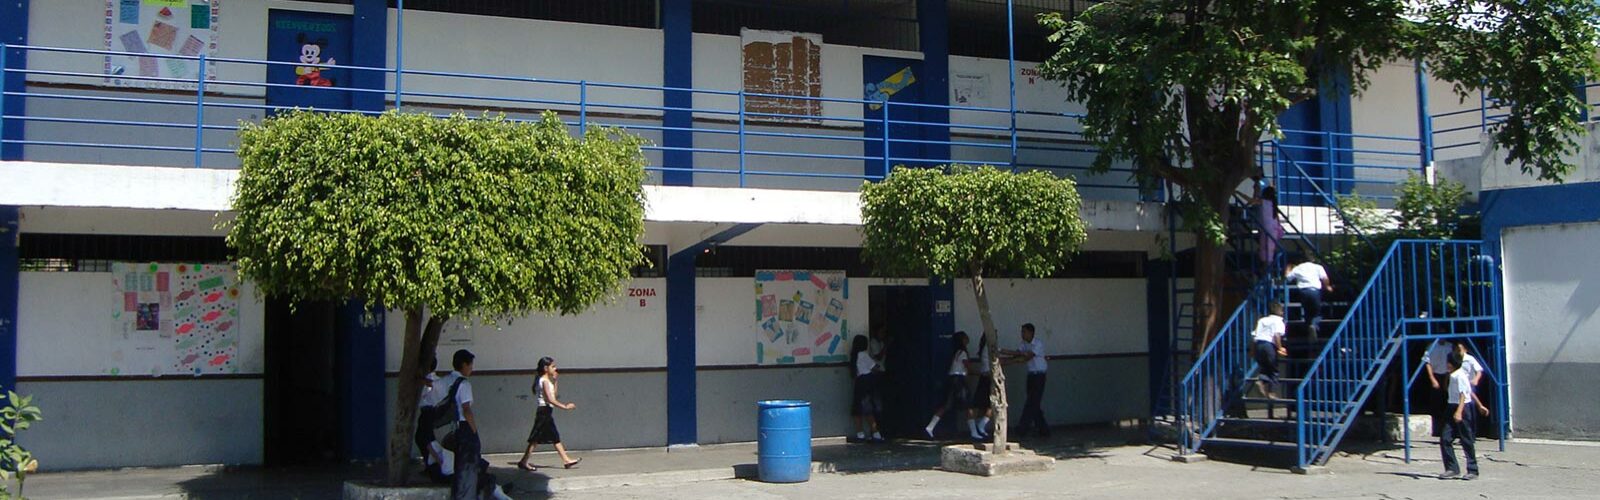 School in El Salvador